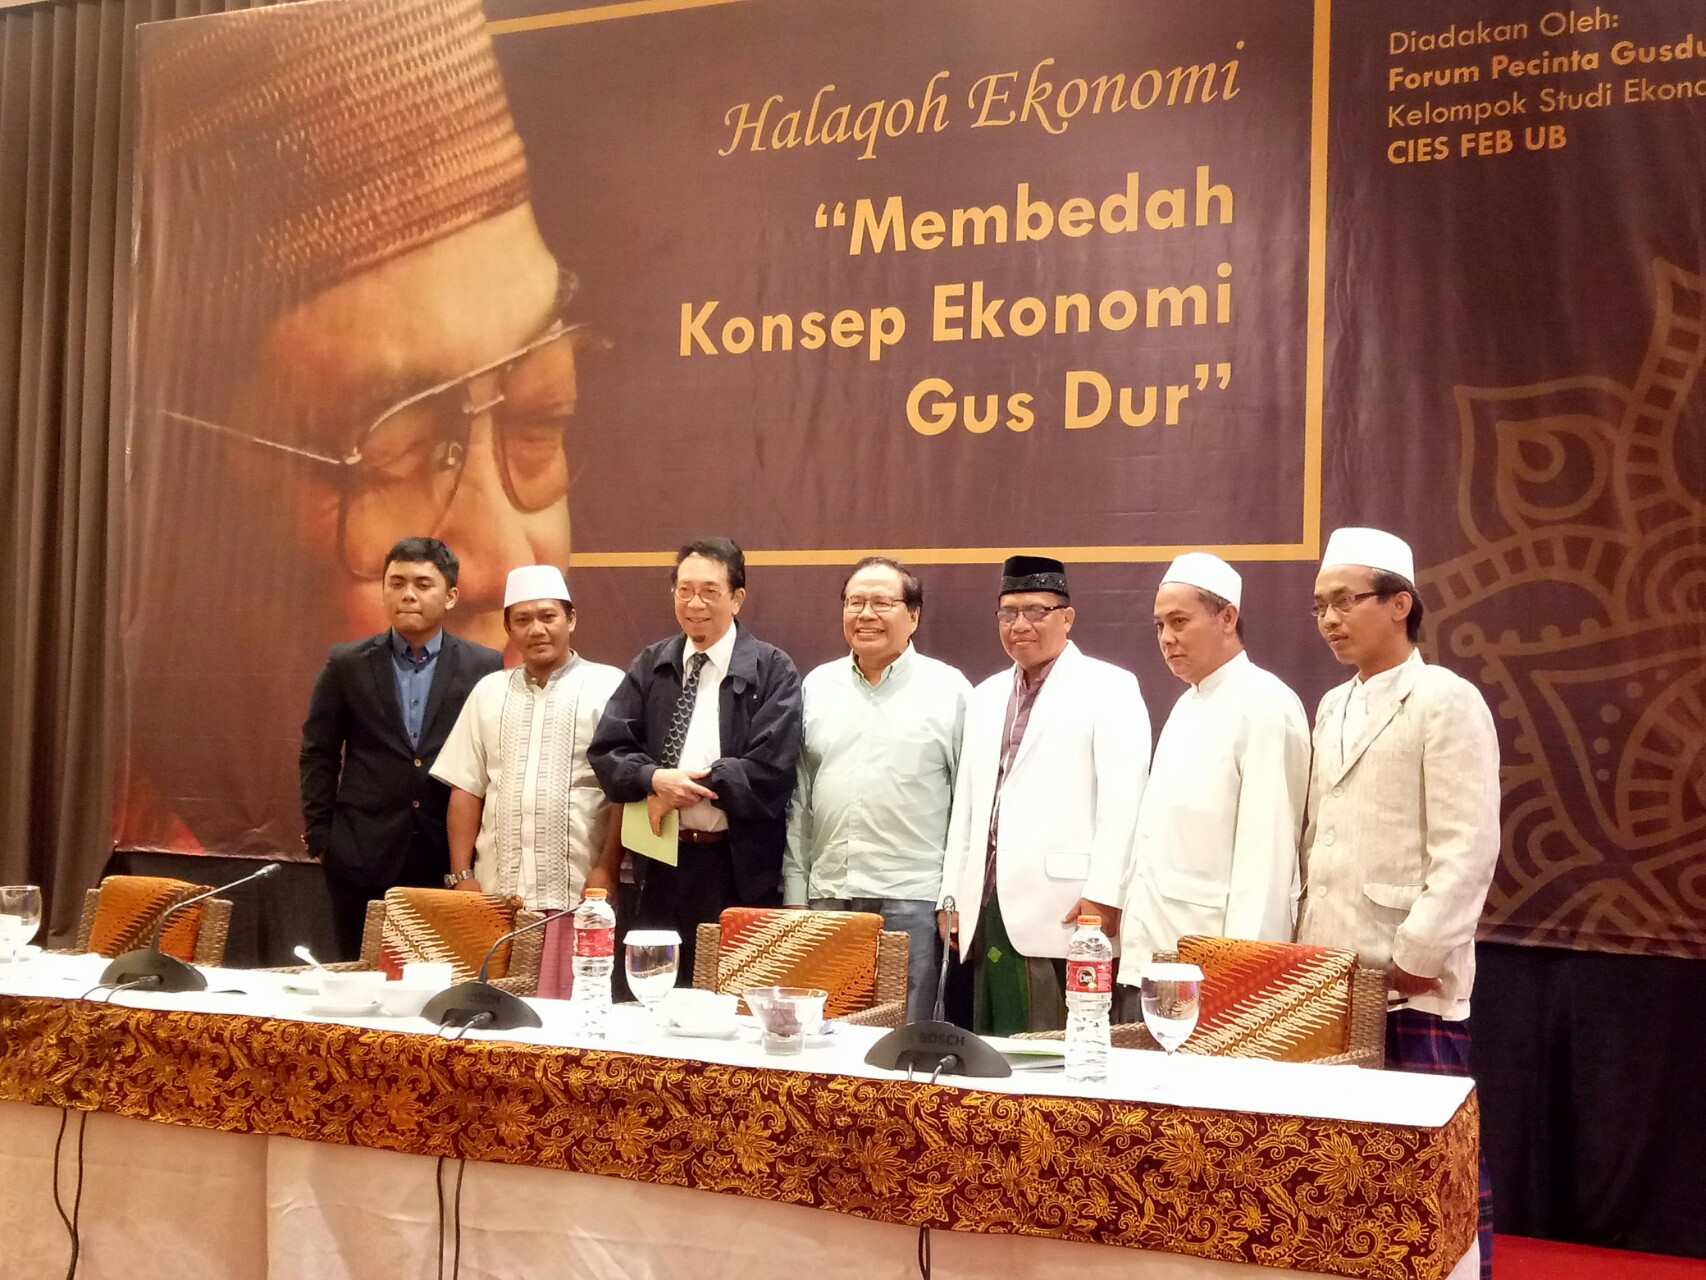 Halaqoh Ekonomi bertemakan 'Membedah Konsep Ekonomi Gus Dur' di Hotel Atria, Kota Malang, Jawa Timur, Kamis 31 Januari 2019.